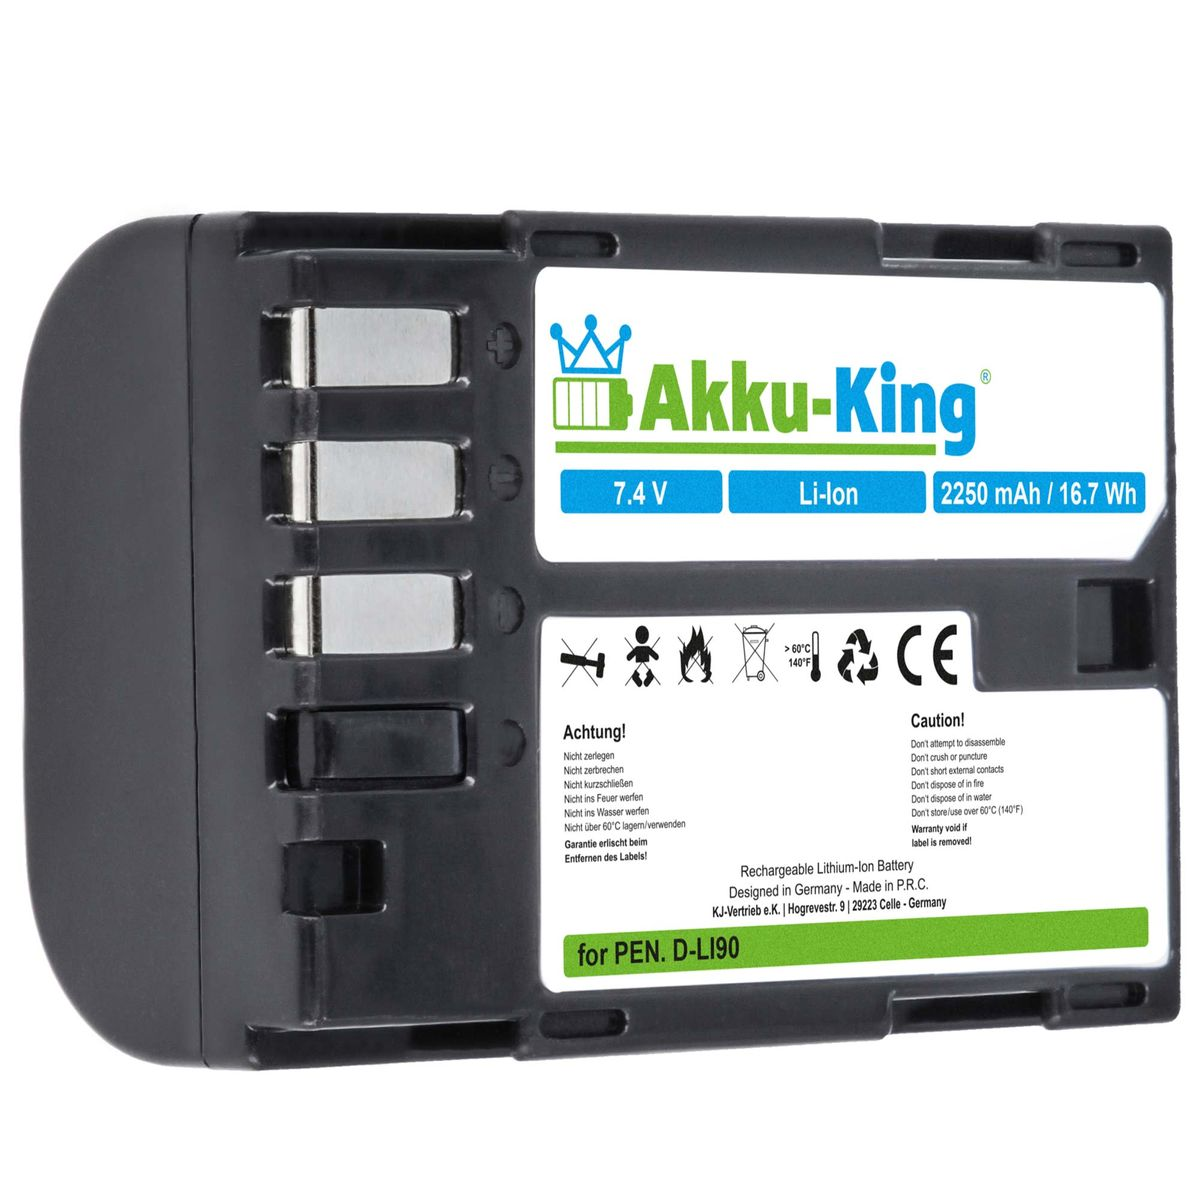 AKKU-KING Akku kompatibel mit D-Li90 Volt, Li-Ion 2250mAh Pentax Kamera-Akku, 7.4